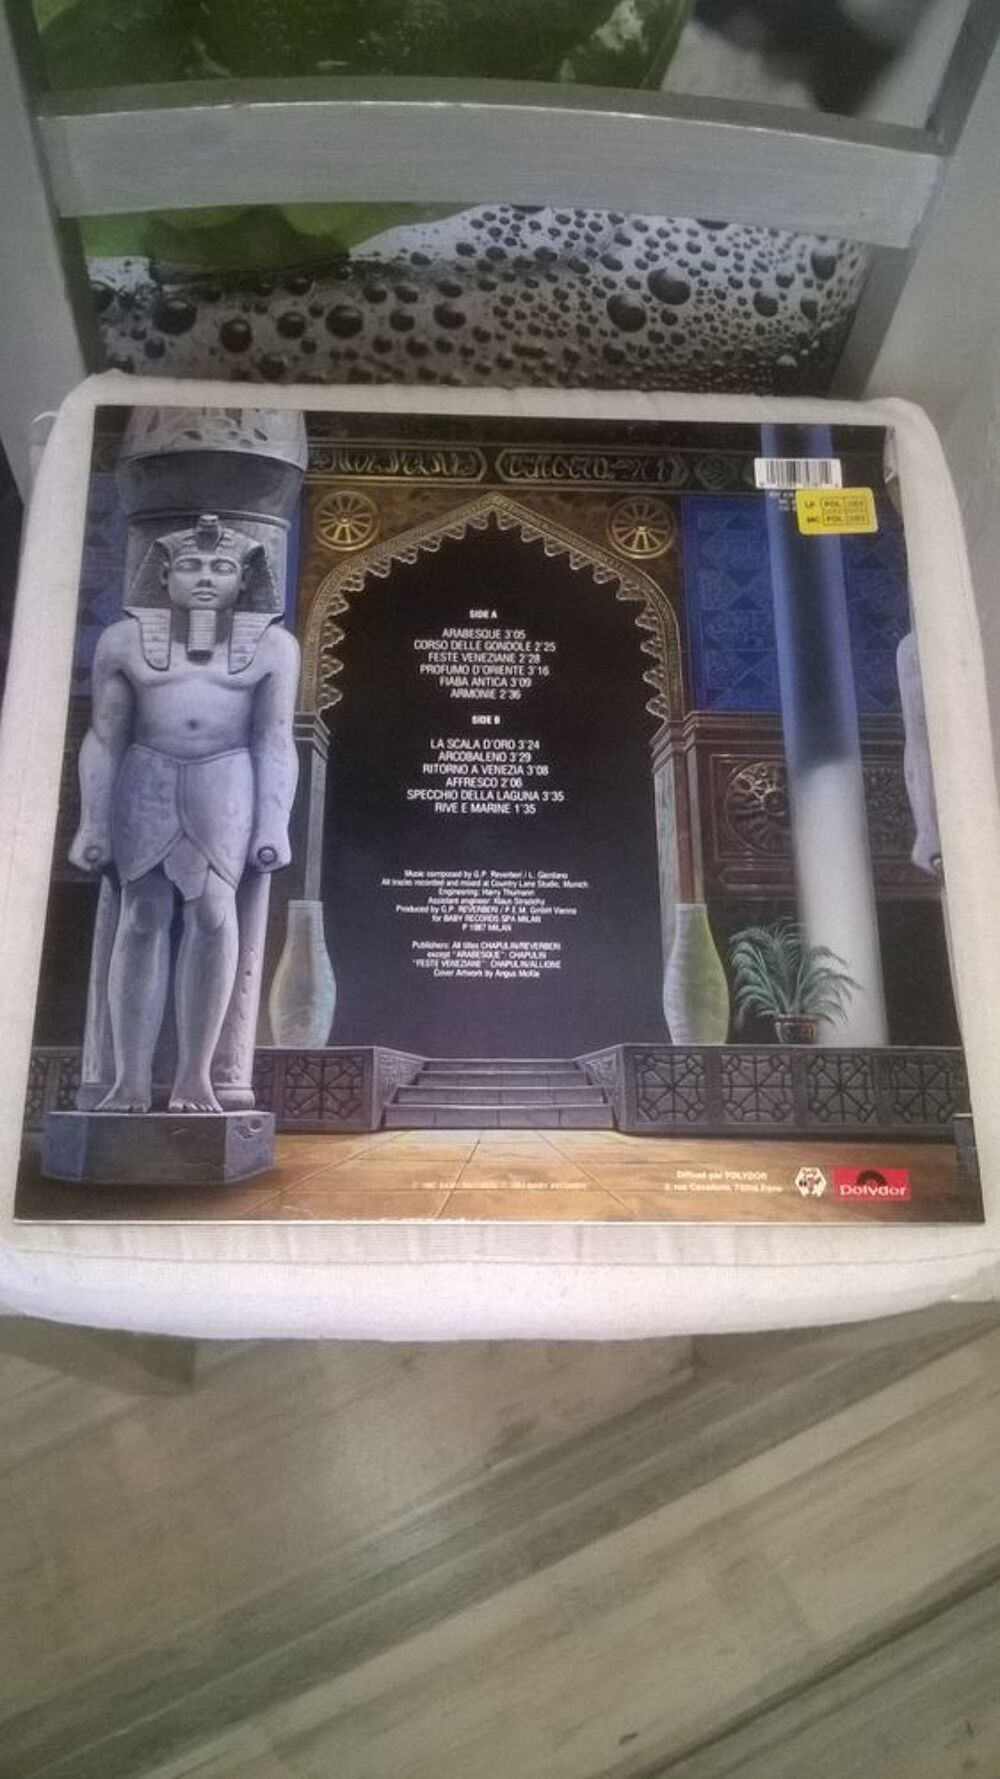 Vinyle Rond&ograve; Veneziano
Arabesque
1987
Excellent etat
Lis CD et vinyles